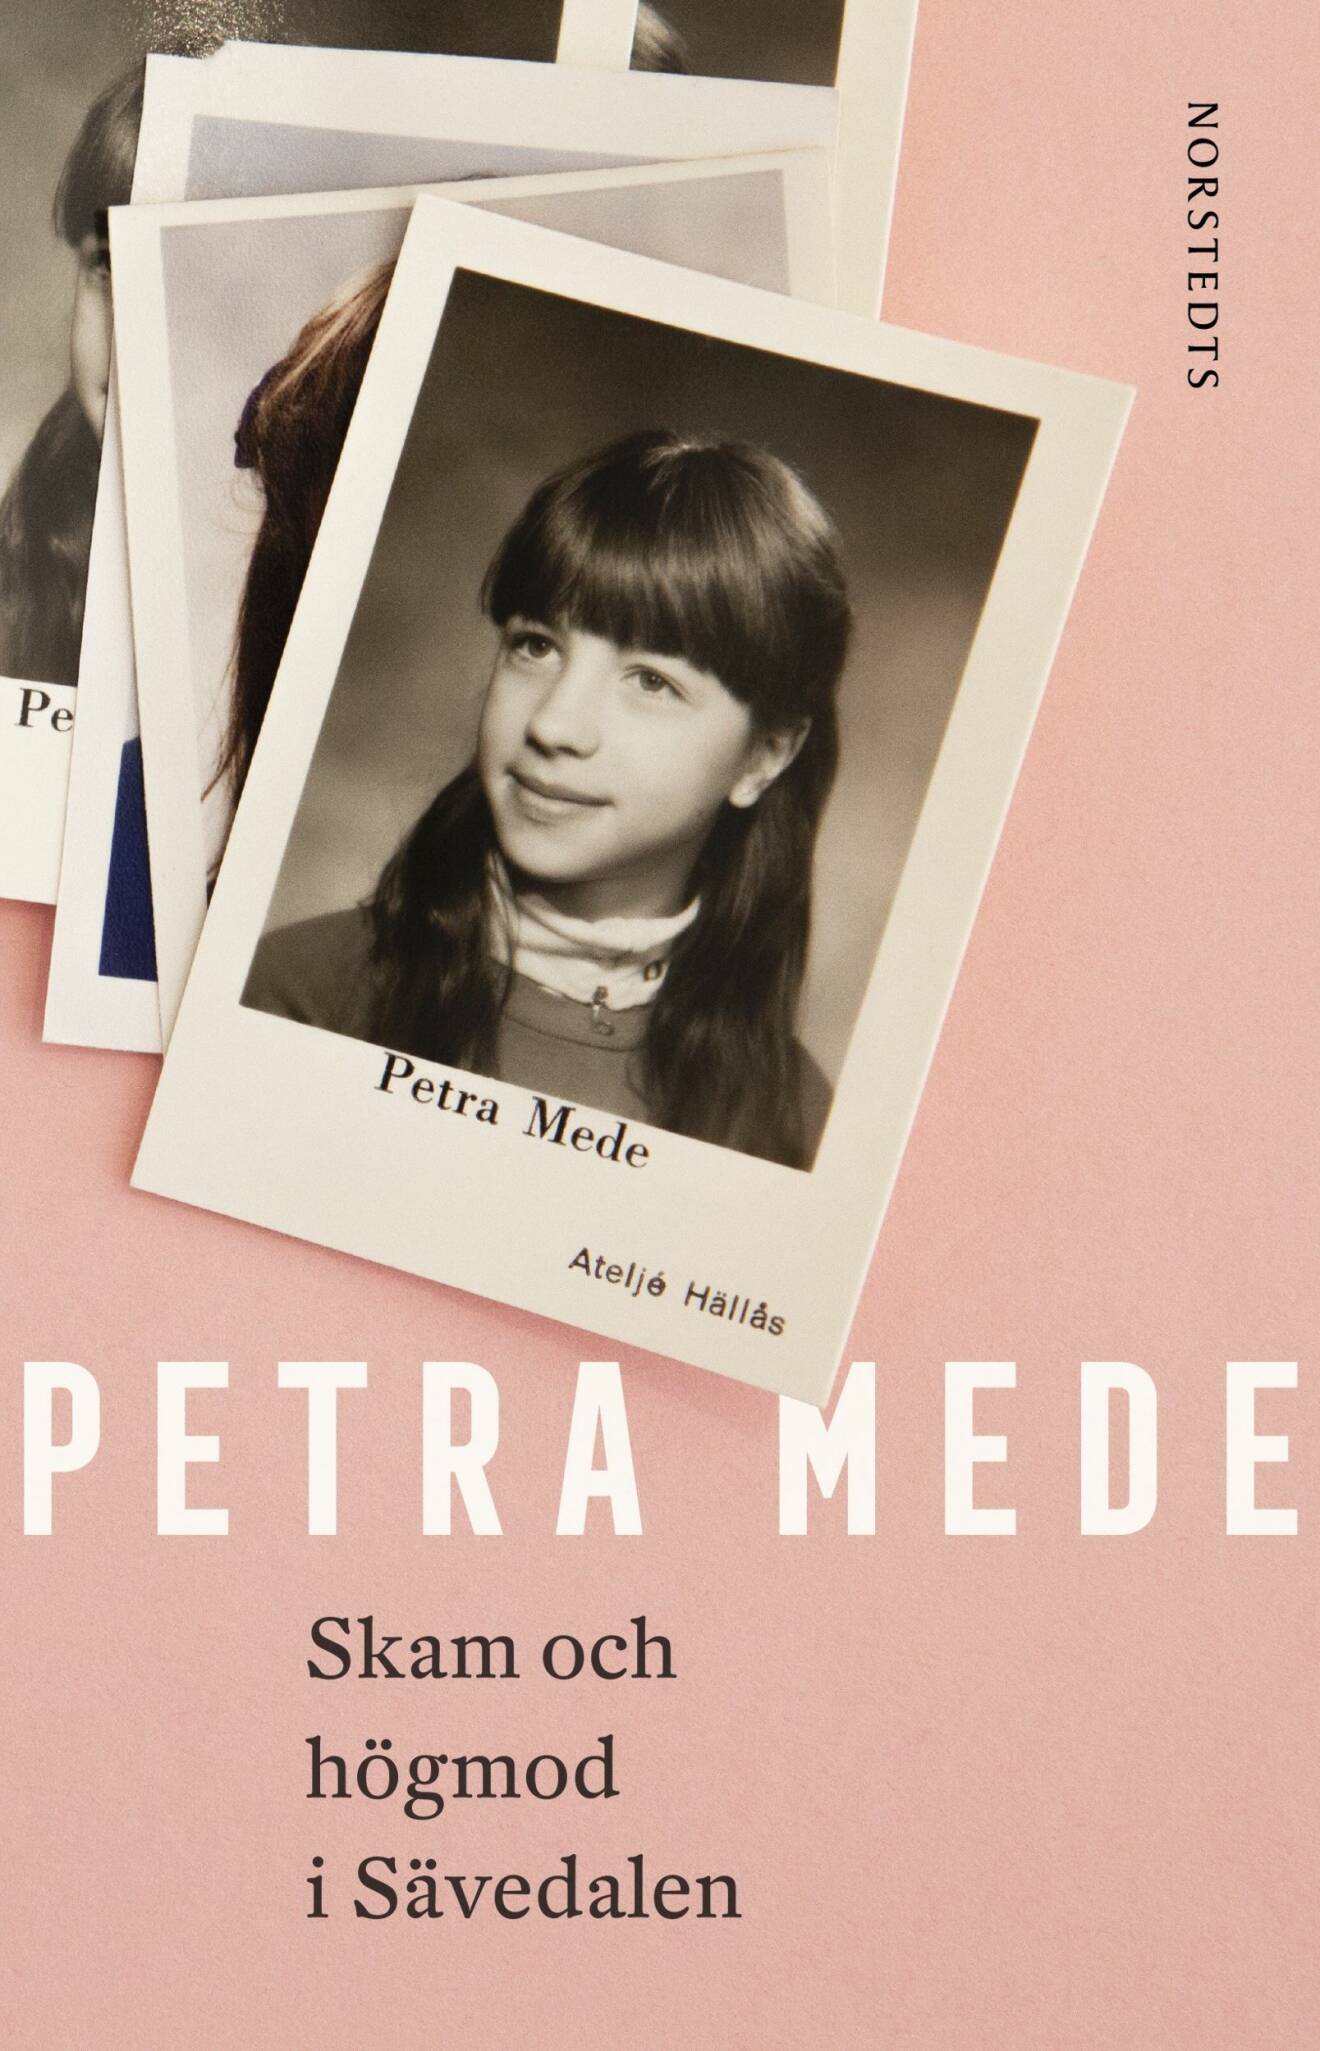 Petra Medes debutbok Skam och högmod i Sävdalen